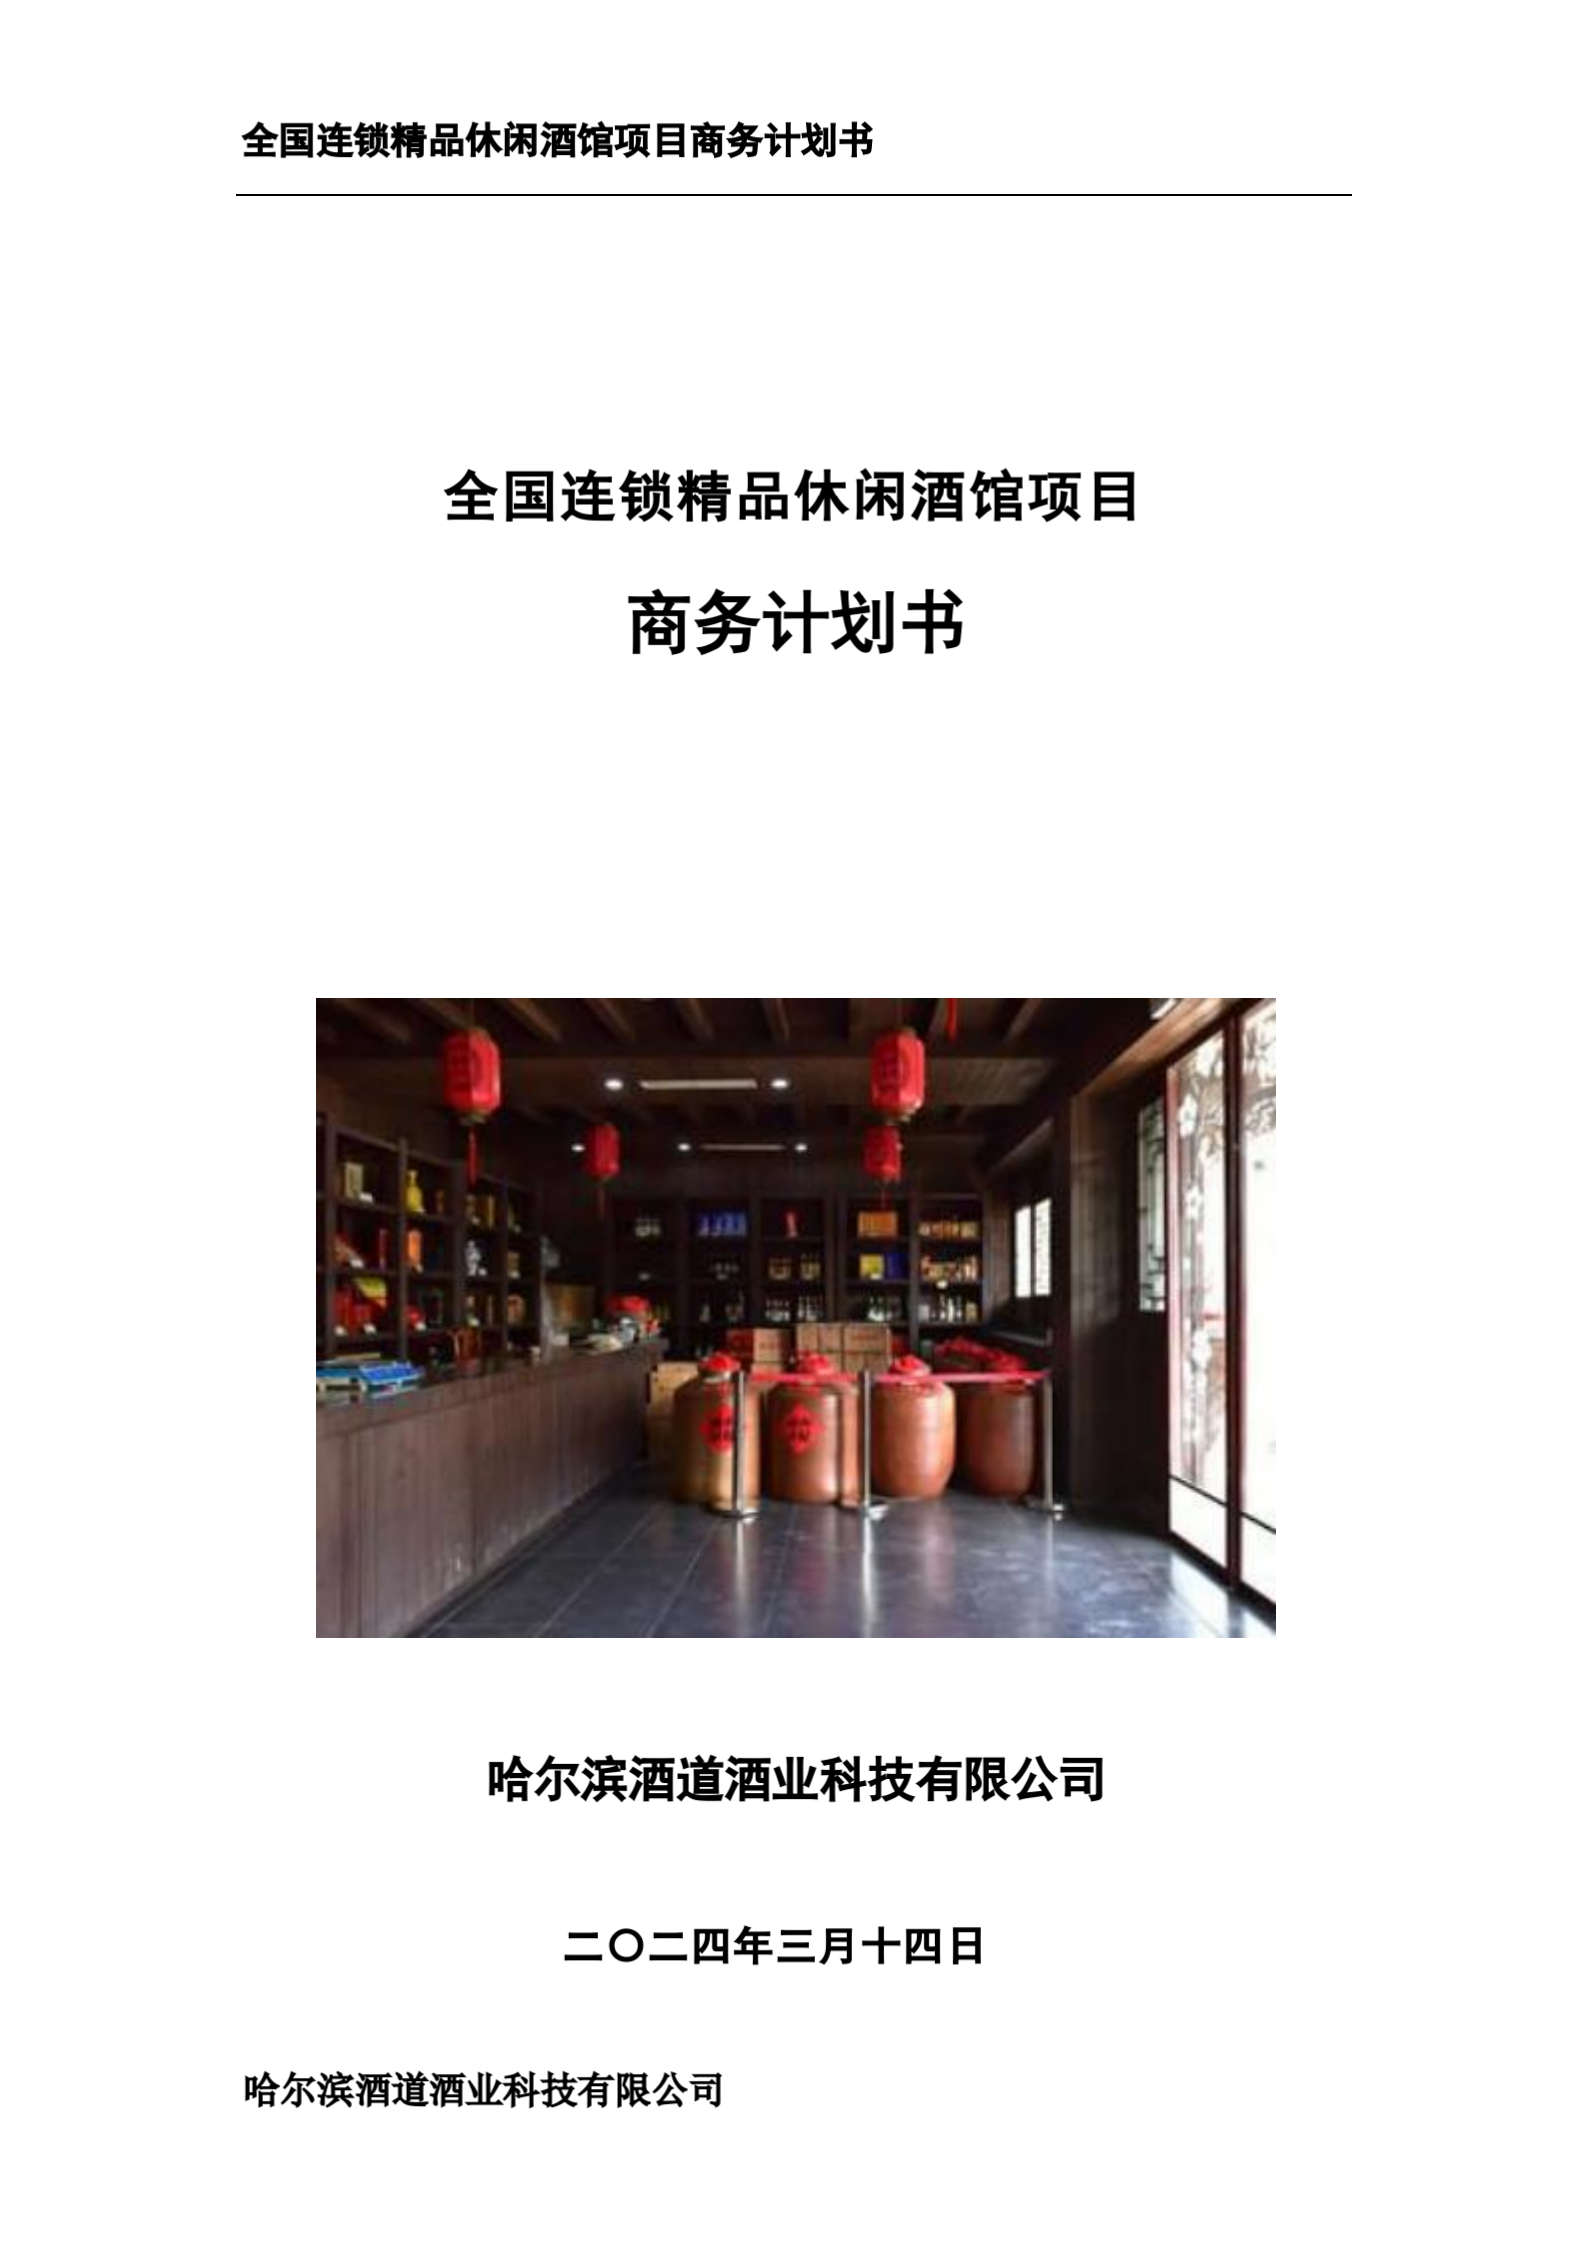 全国连锁精品休闲酒馆项目商务计划书(1)_01.png